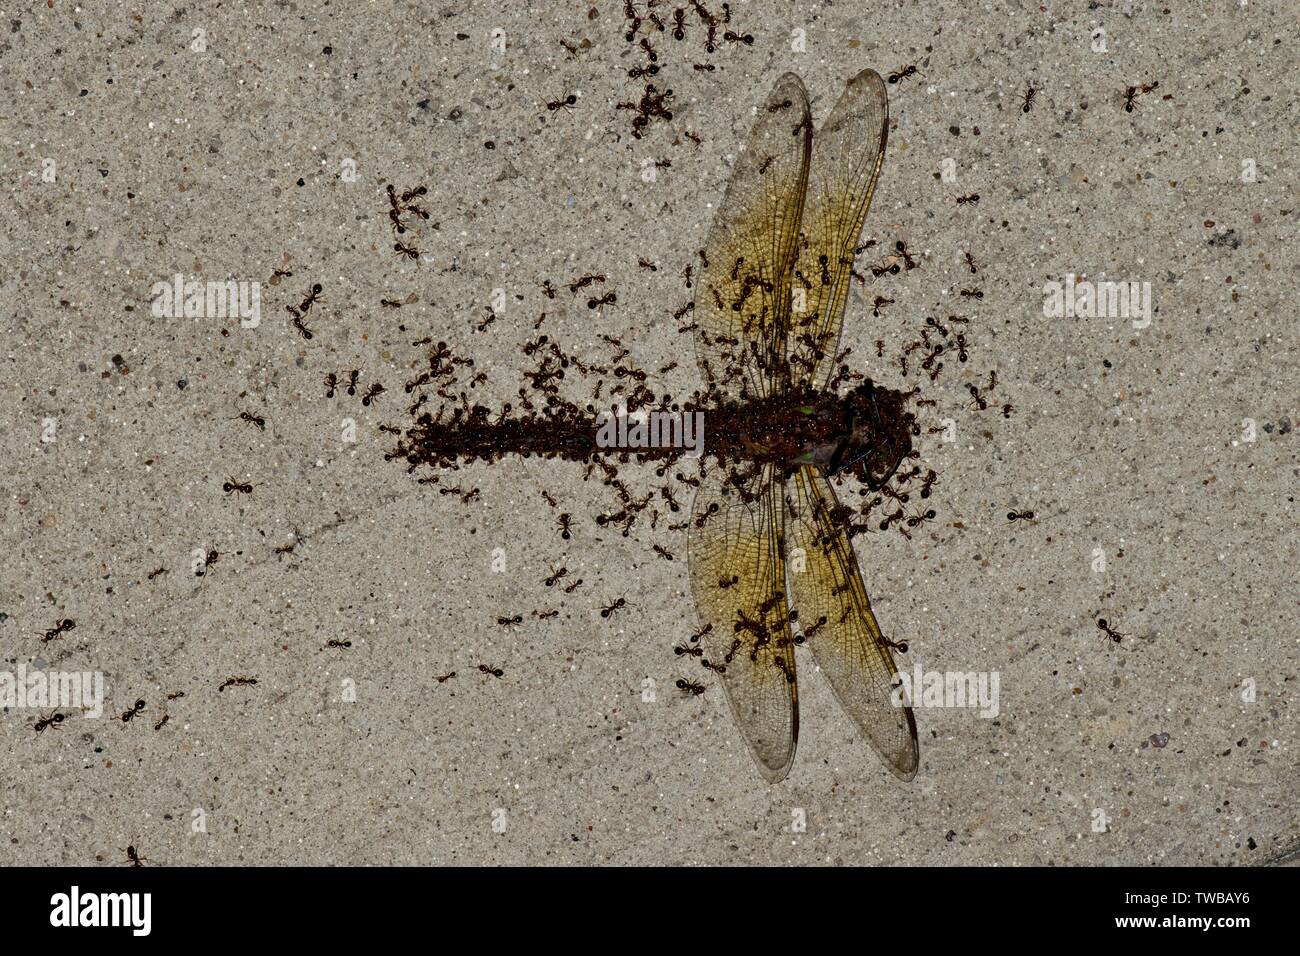 L'essaimage des fourmis rouges à travers le corps mort d'une libellule, elle augmente doucement et en prenant part à leur colonie. Banque D'Images